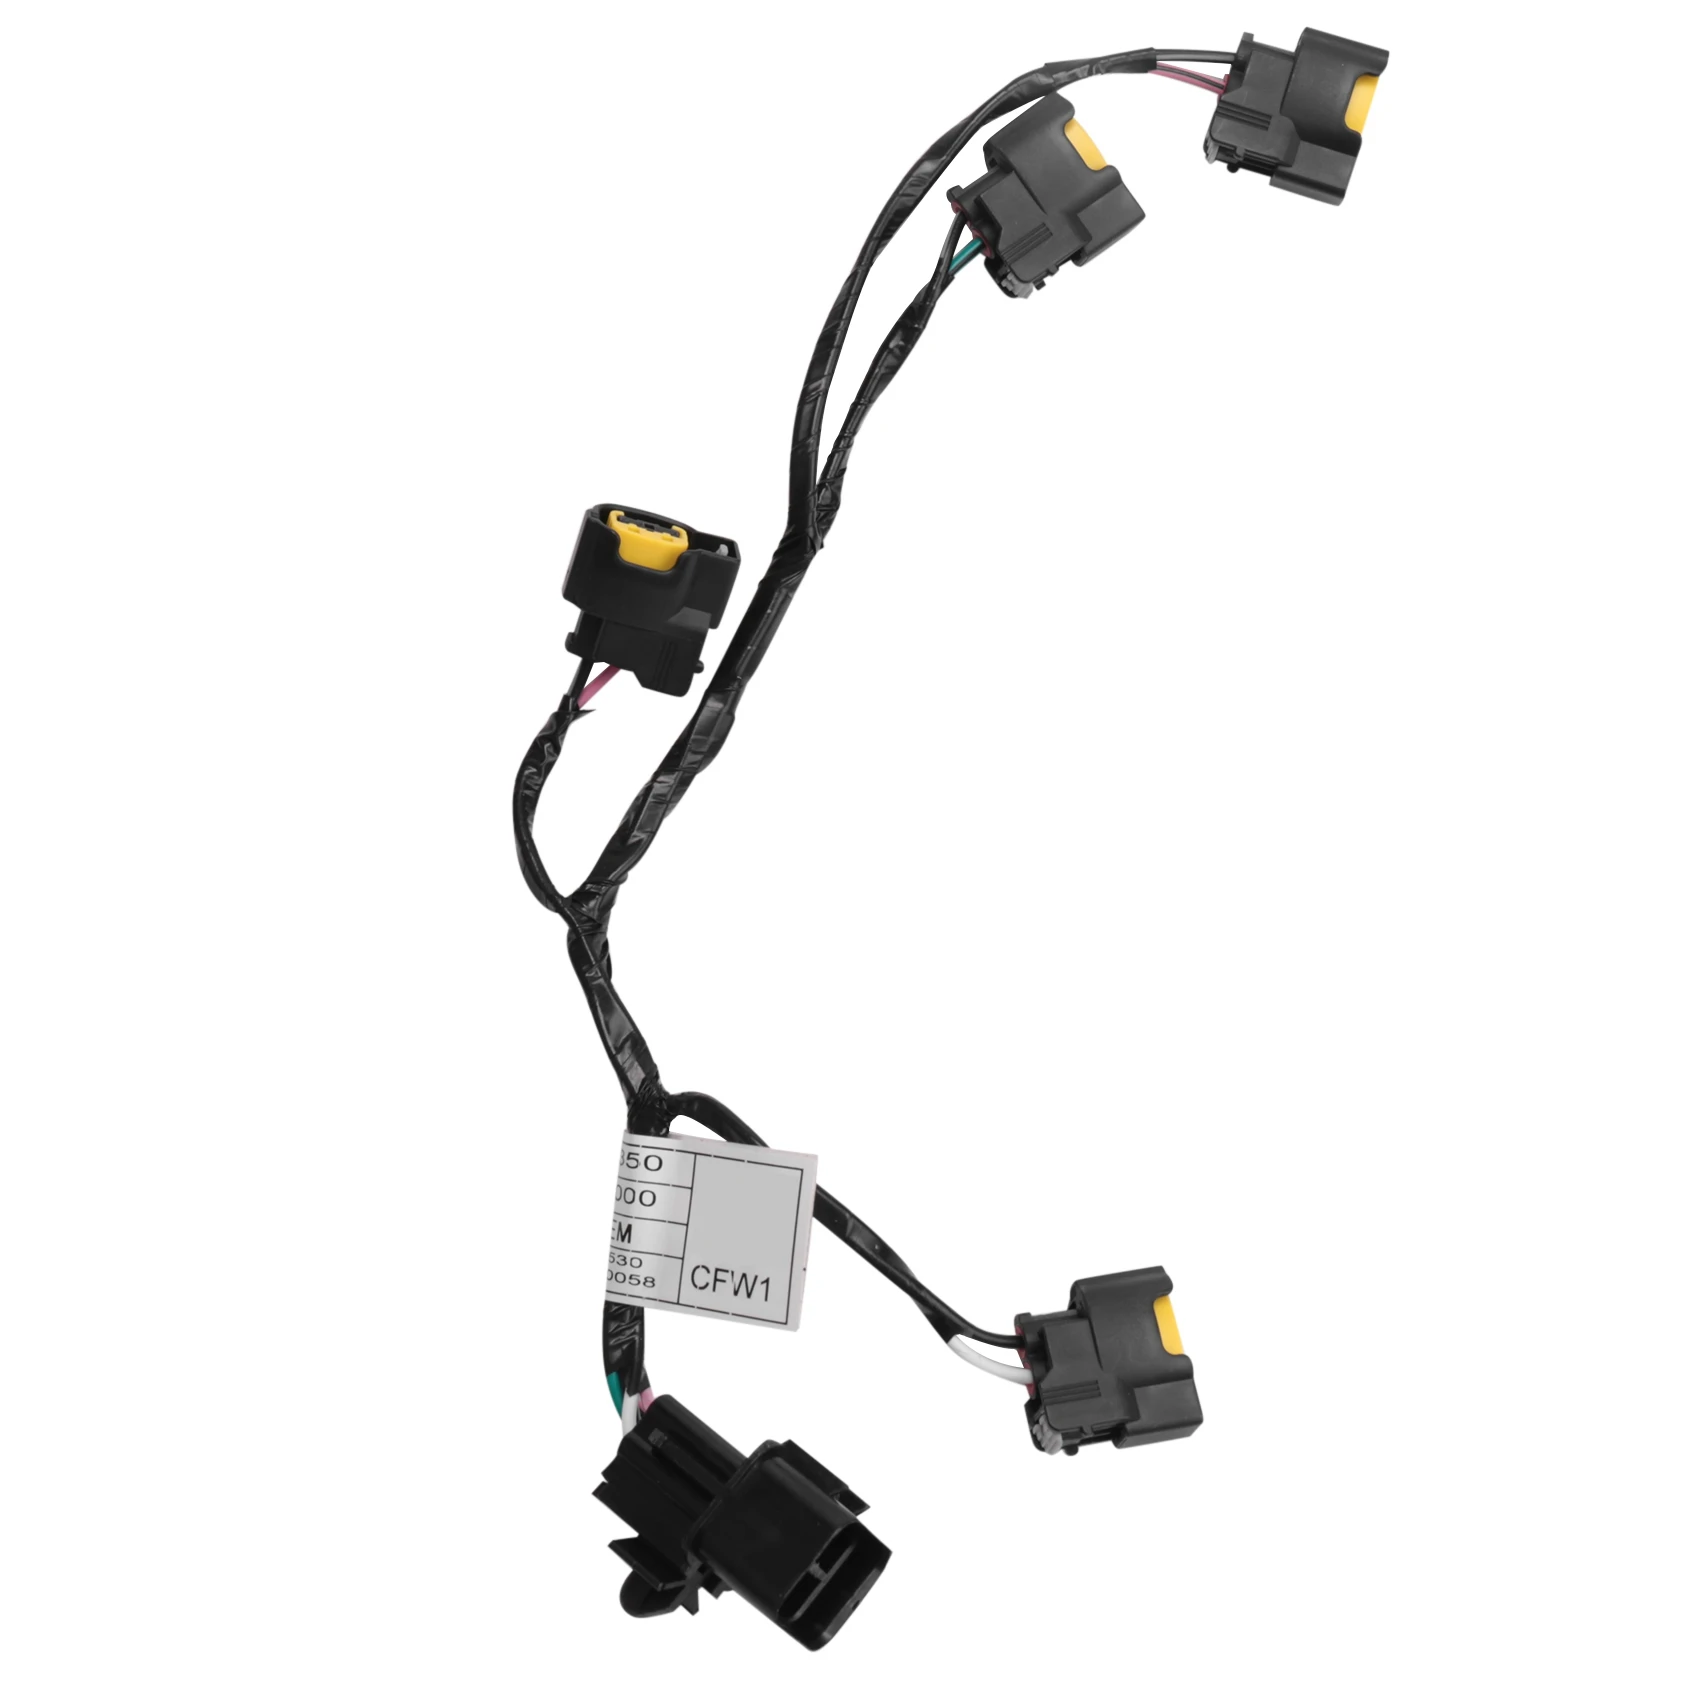 

27350-2B000 Ignition Coil Cable Plug Wire Harness for Kia Rio Soul Ceed Cerato Spectra Forte Rondo Hyundai Elantra Accent 1.6L